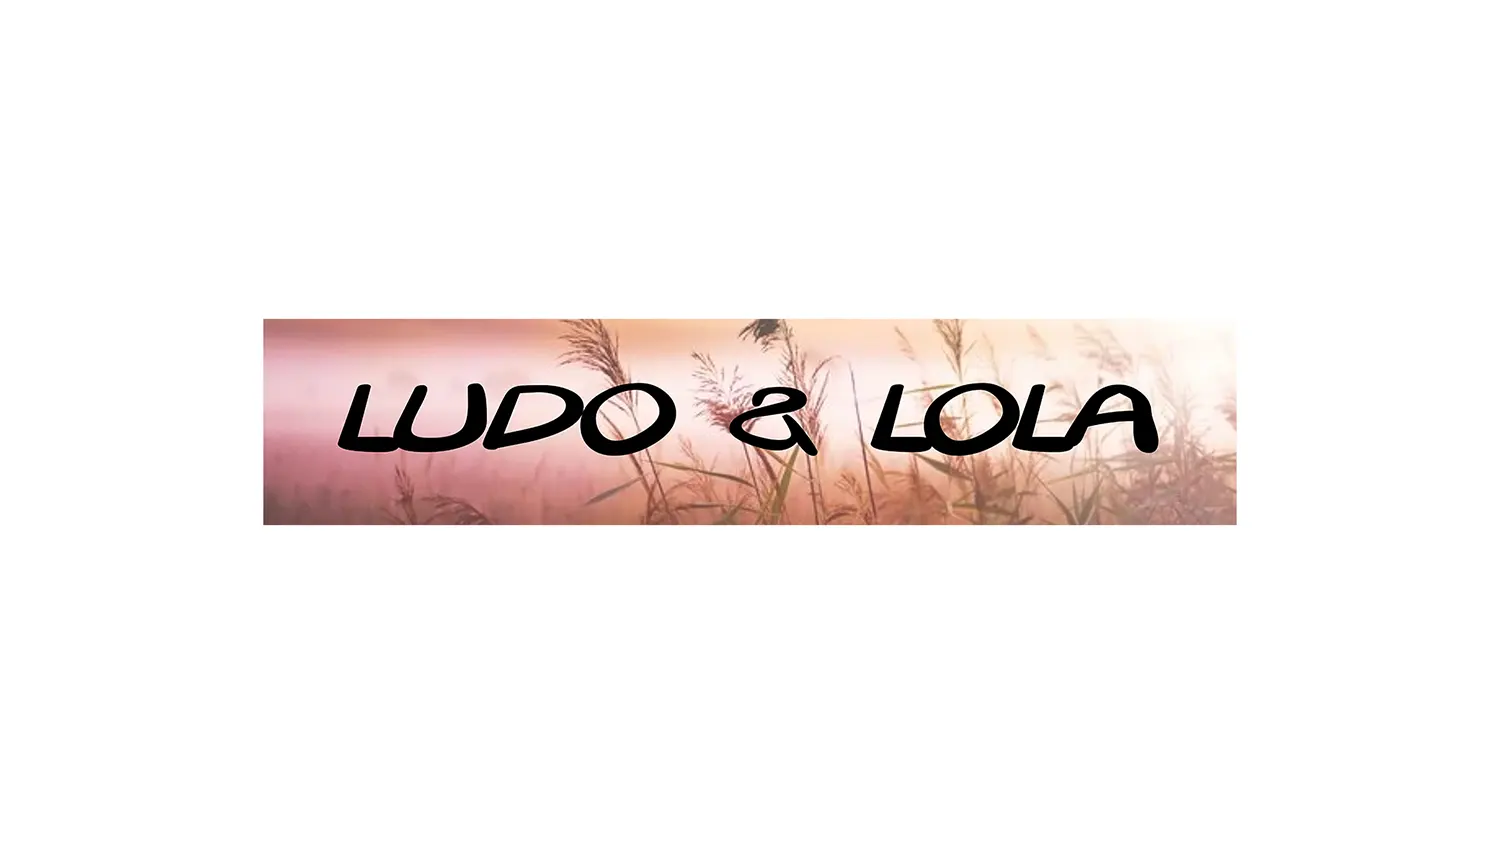 bijvoorbeeld de plaquette van Ludo en Lola